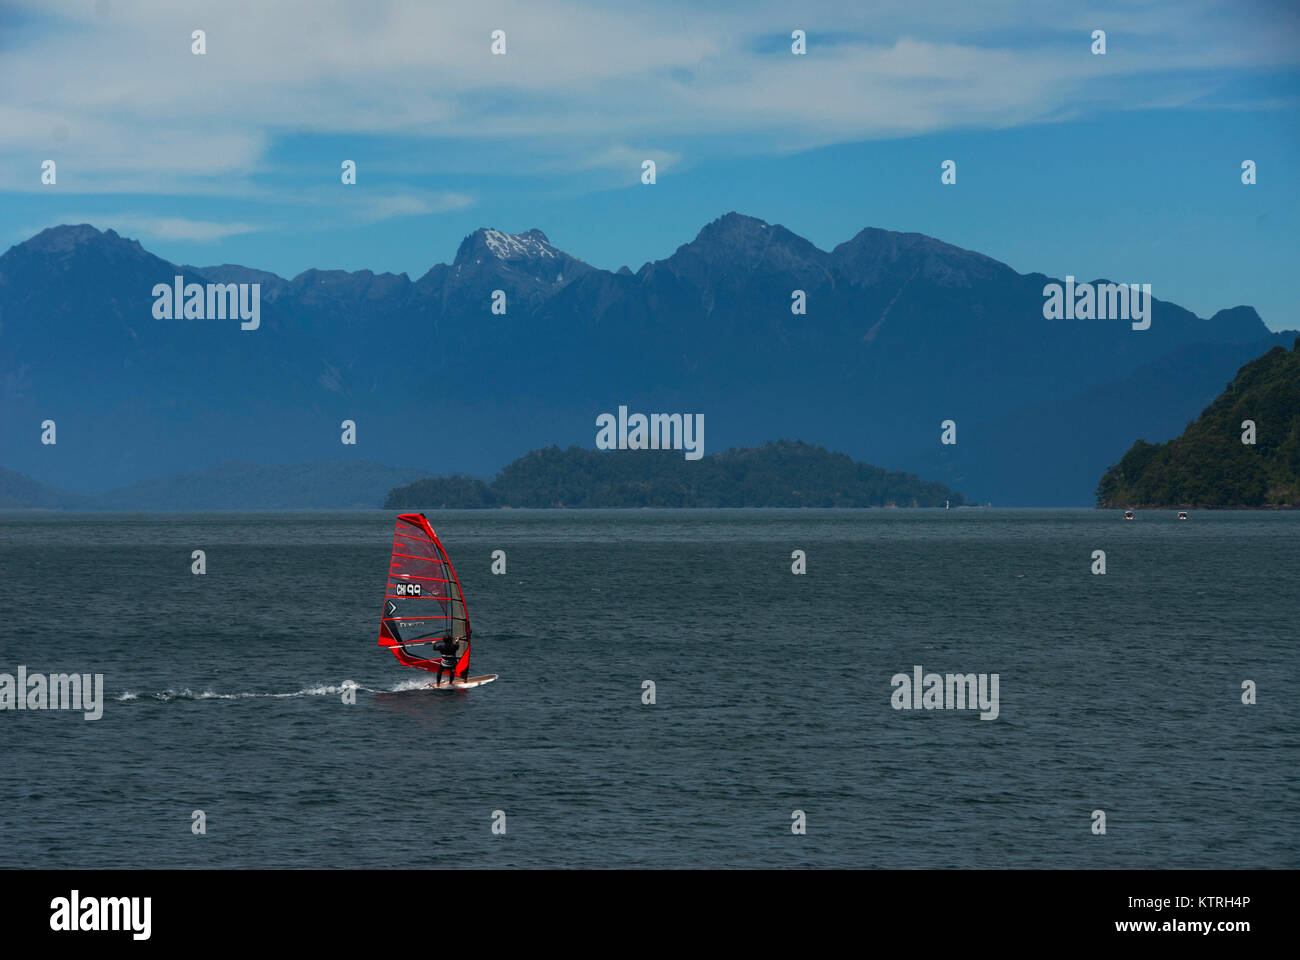 Planche à voile au lac de montagne Photo Stock - Alamy